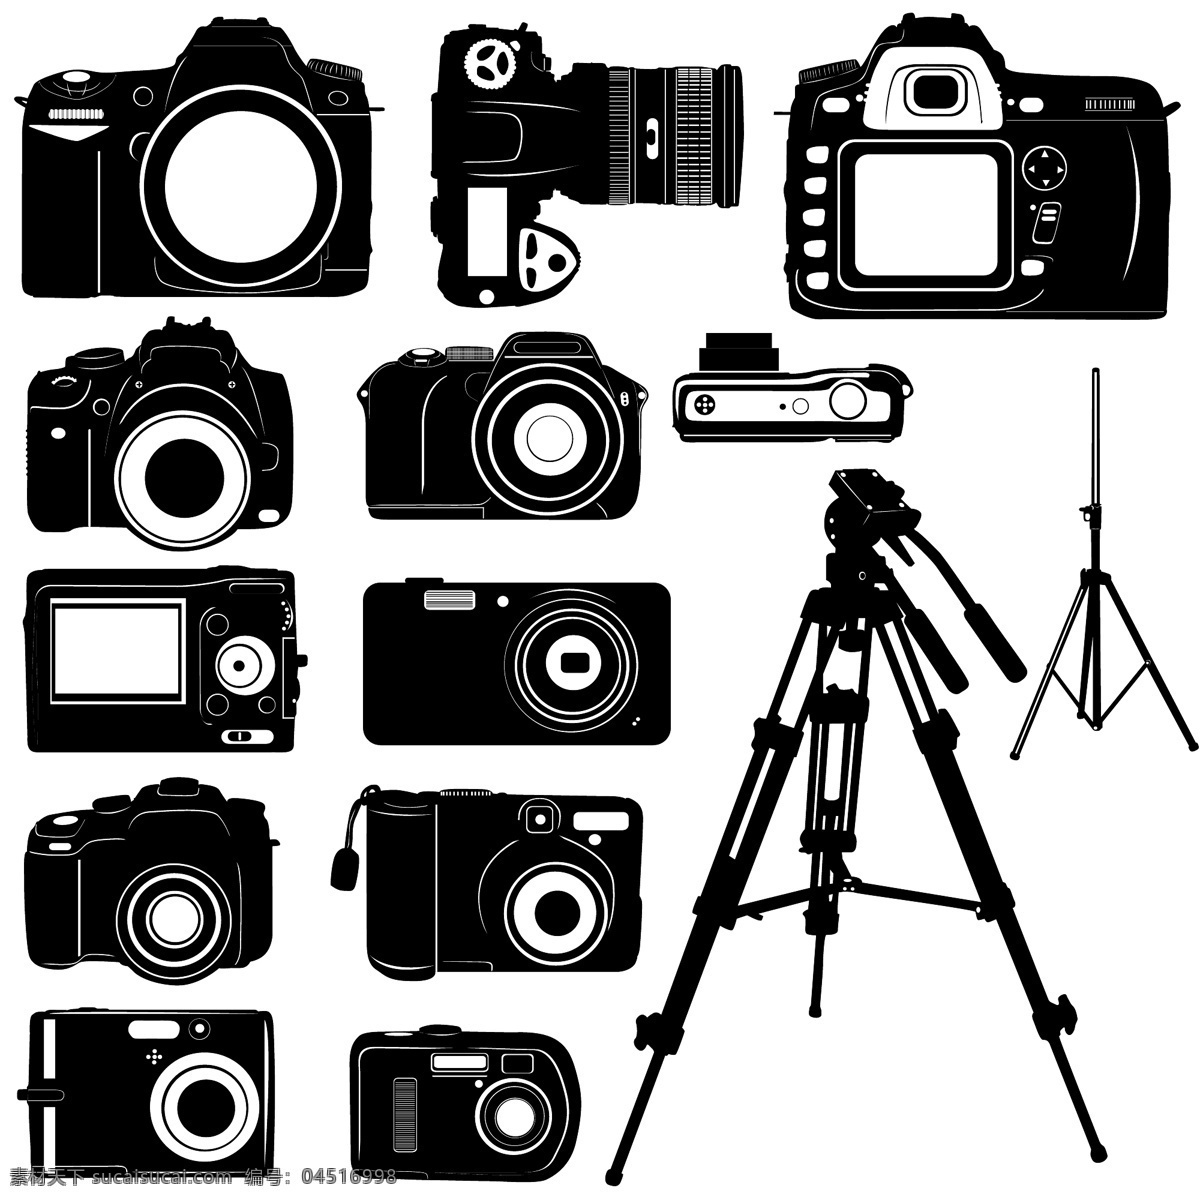 黑白 相机 其他矢量 矢量素材 矢量图库 矢量 模板下载 黑白相机 psd源文件